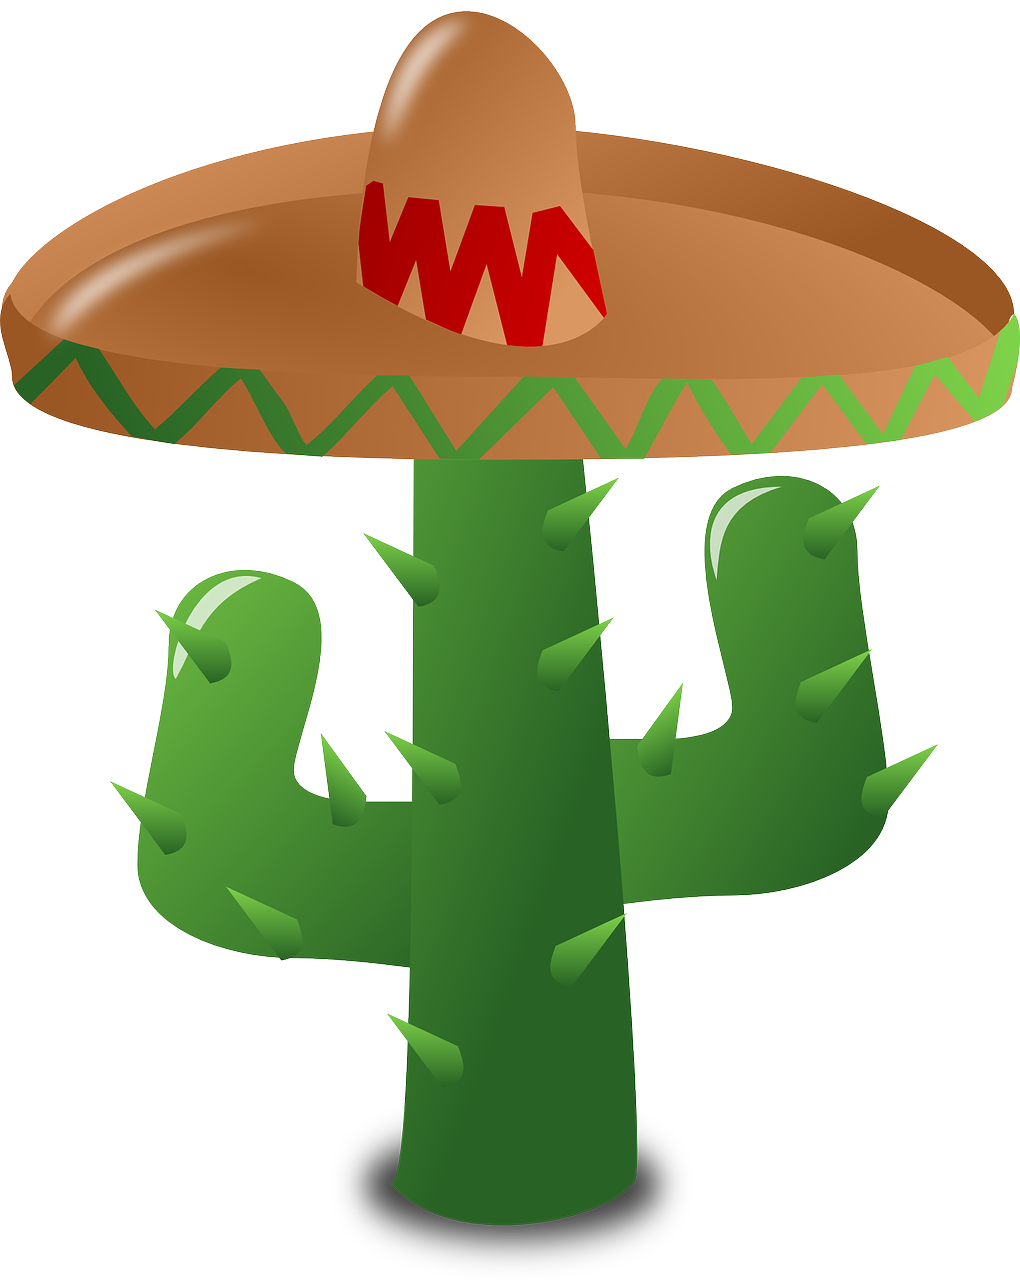 mexico clipart desert